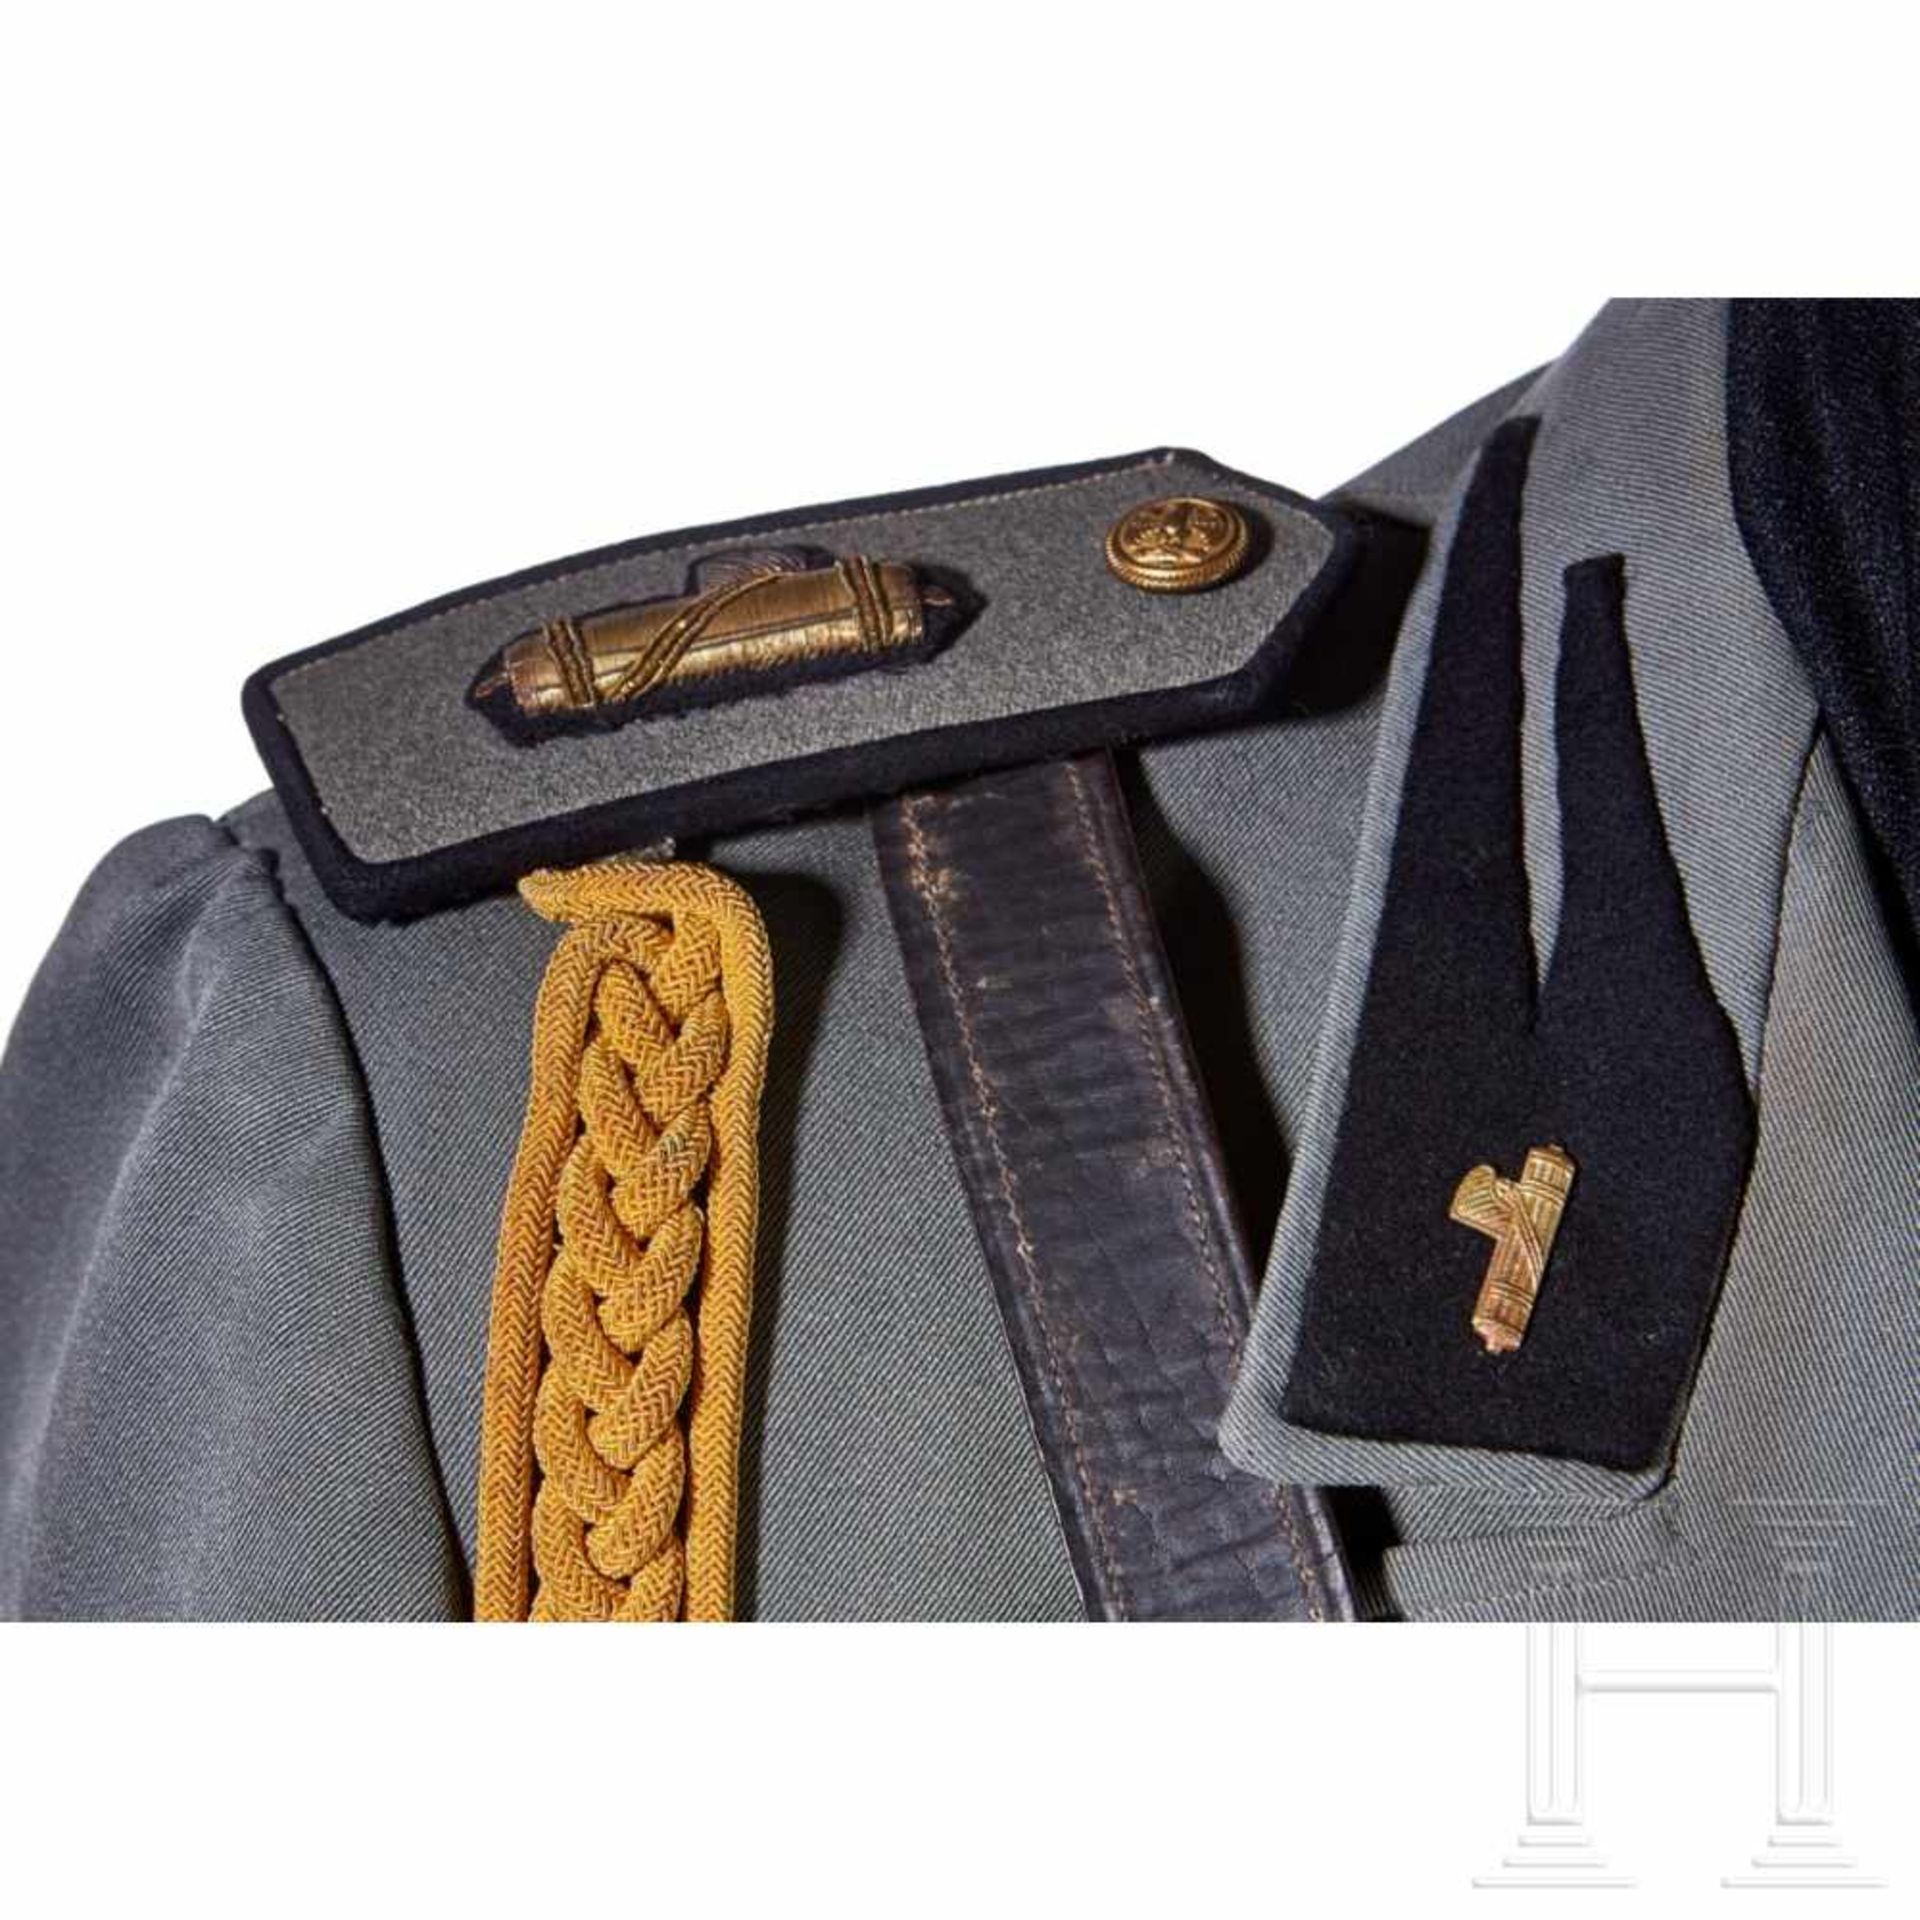 Service Tunic for an MVSN OberleutnantFine field-grey gabardine wool with pleated patch pockets - Bild 8 aus 9